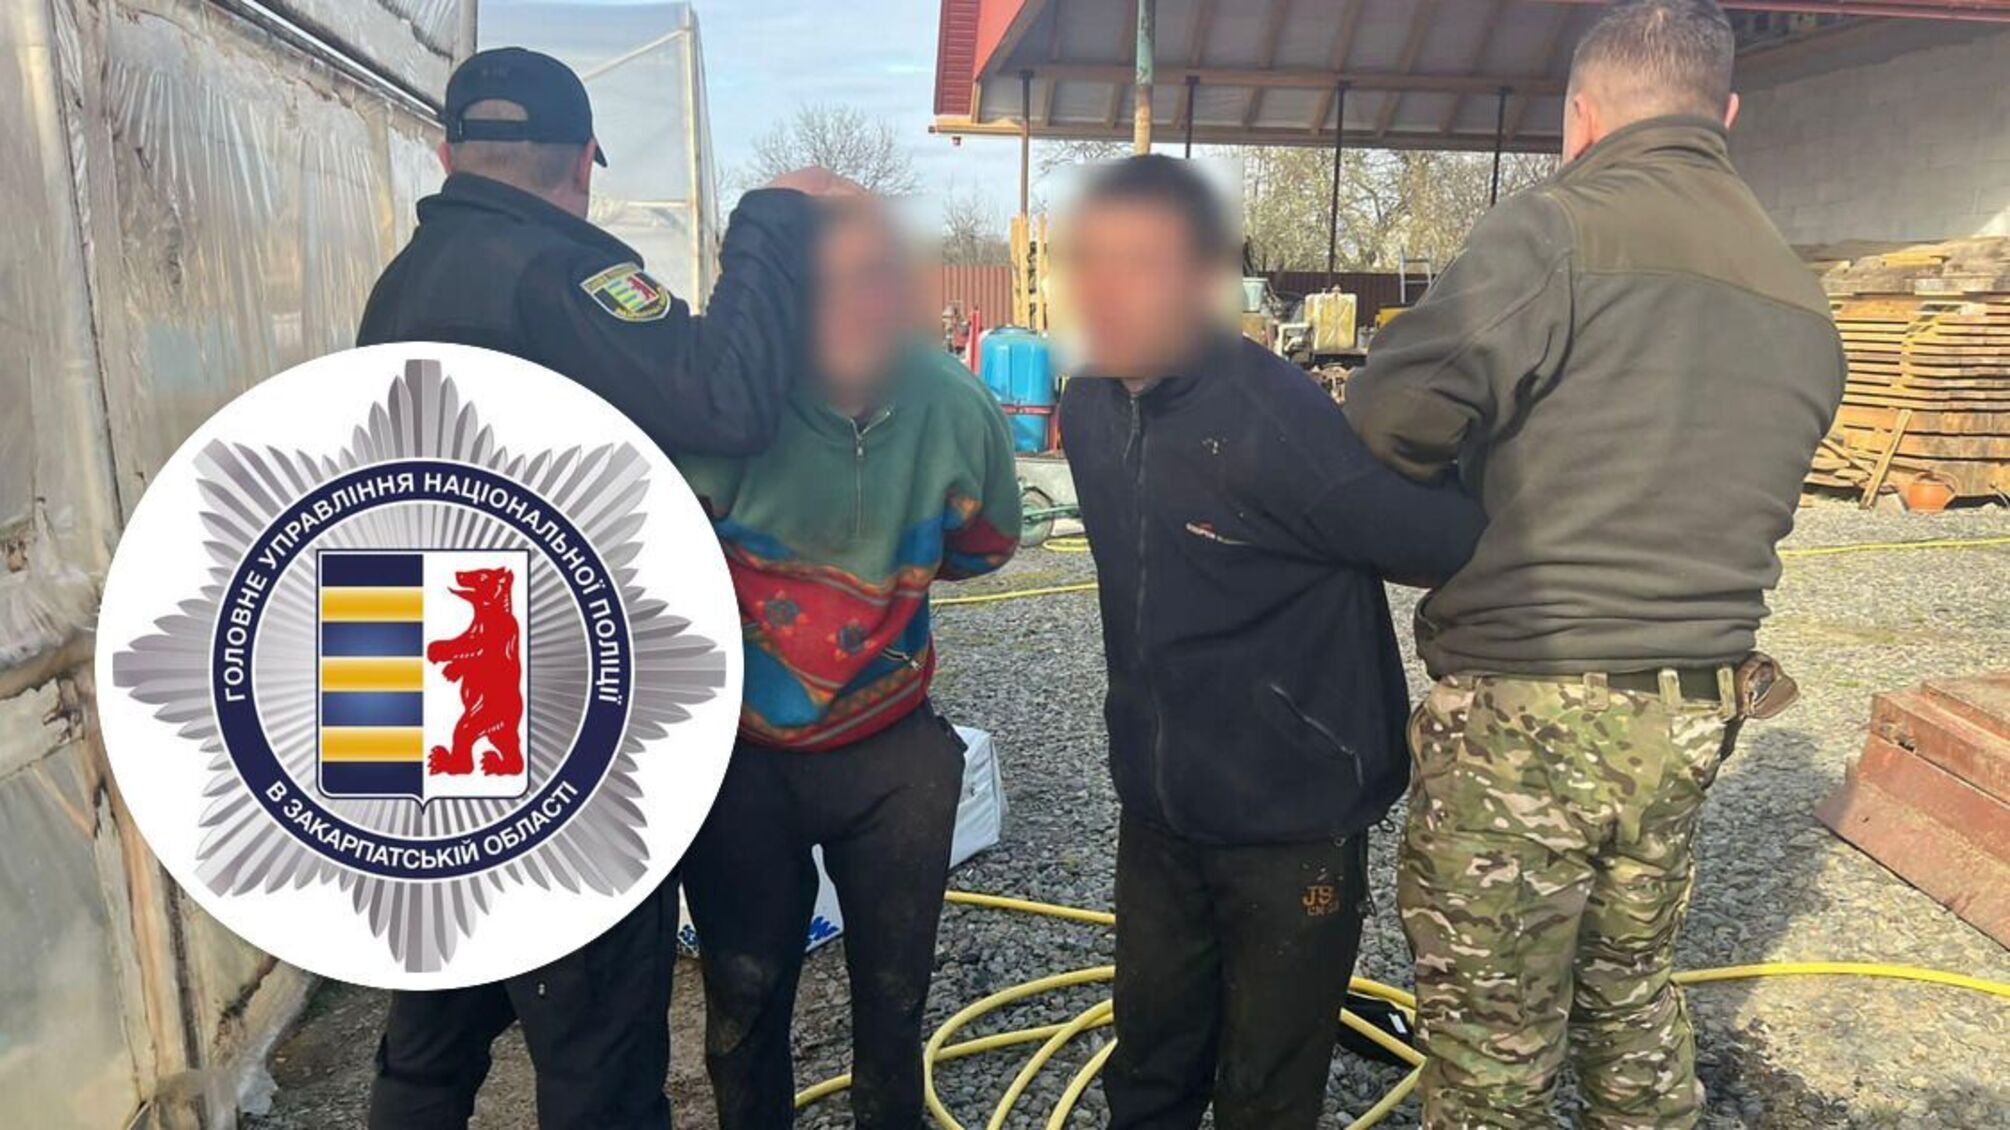 Так помогали уклонистам бежать из Украины, что напоследок избили пограничника: сообщено о подозрении переправщикам